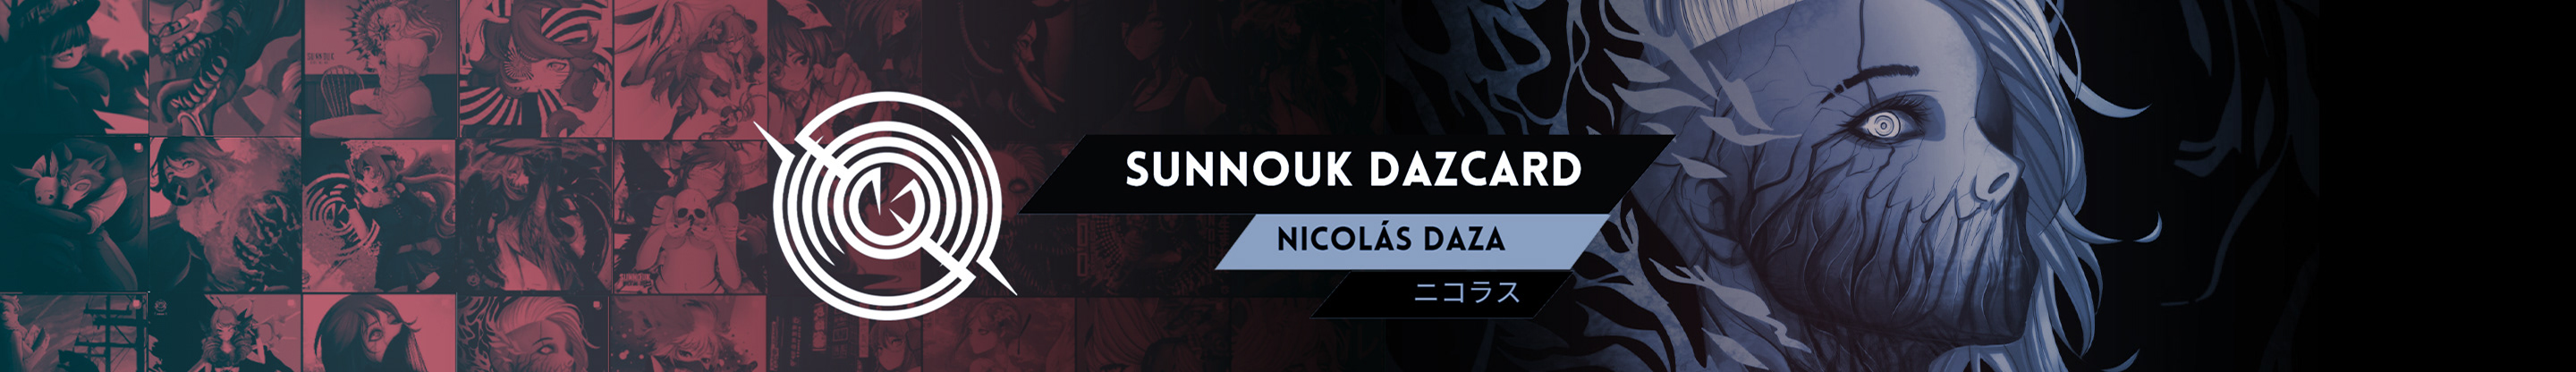 Profil-Banner von Nicolás Daza